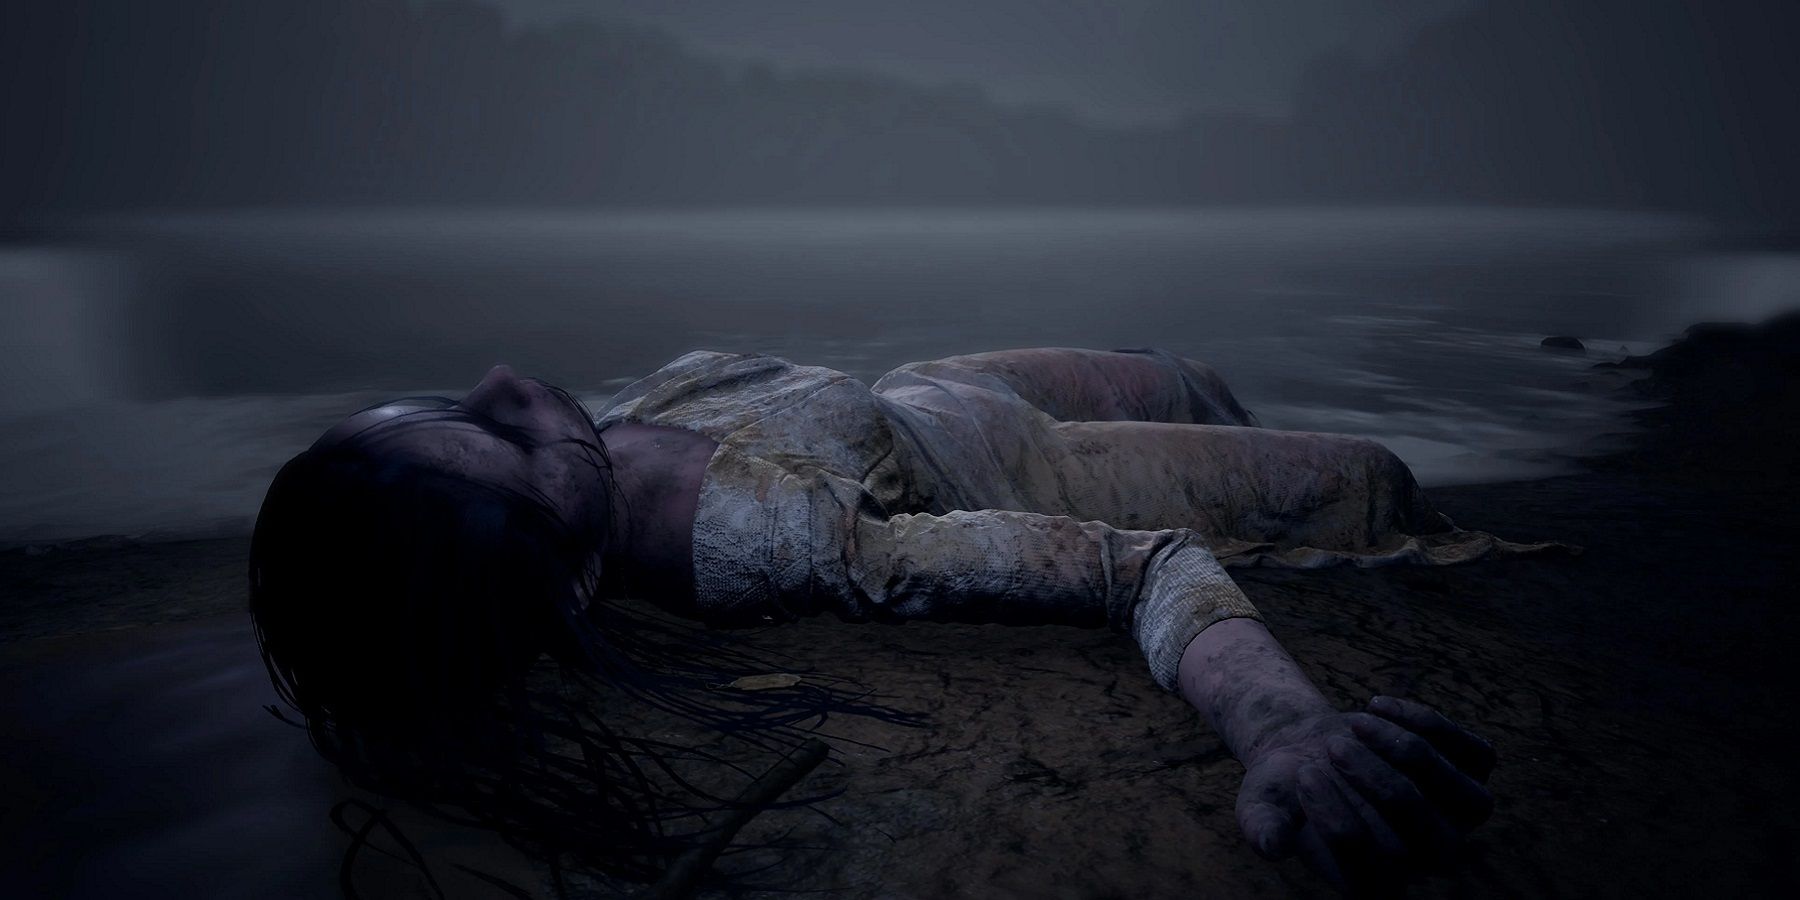 Изображение из игры Марта мертва, показывающее мертвую женщину, выброшенную на берег.